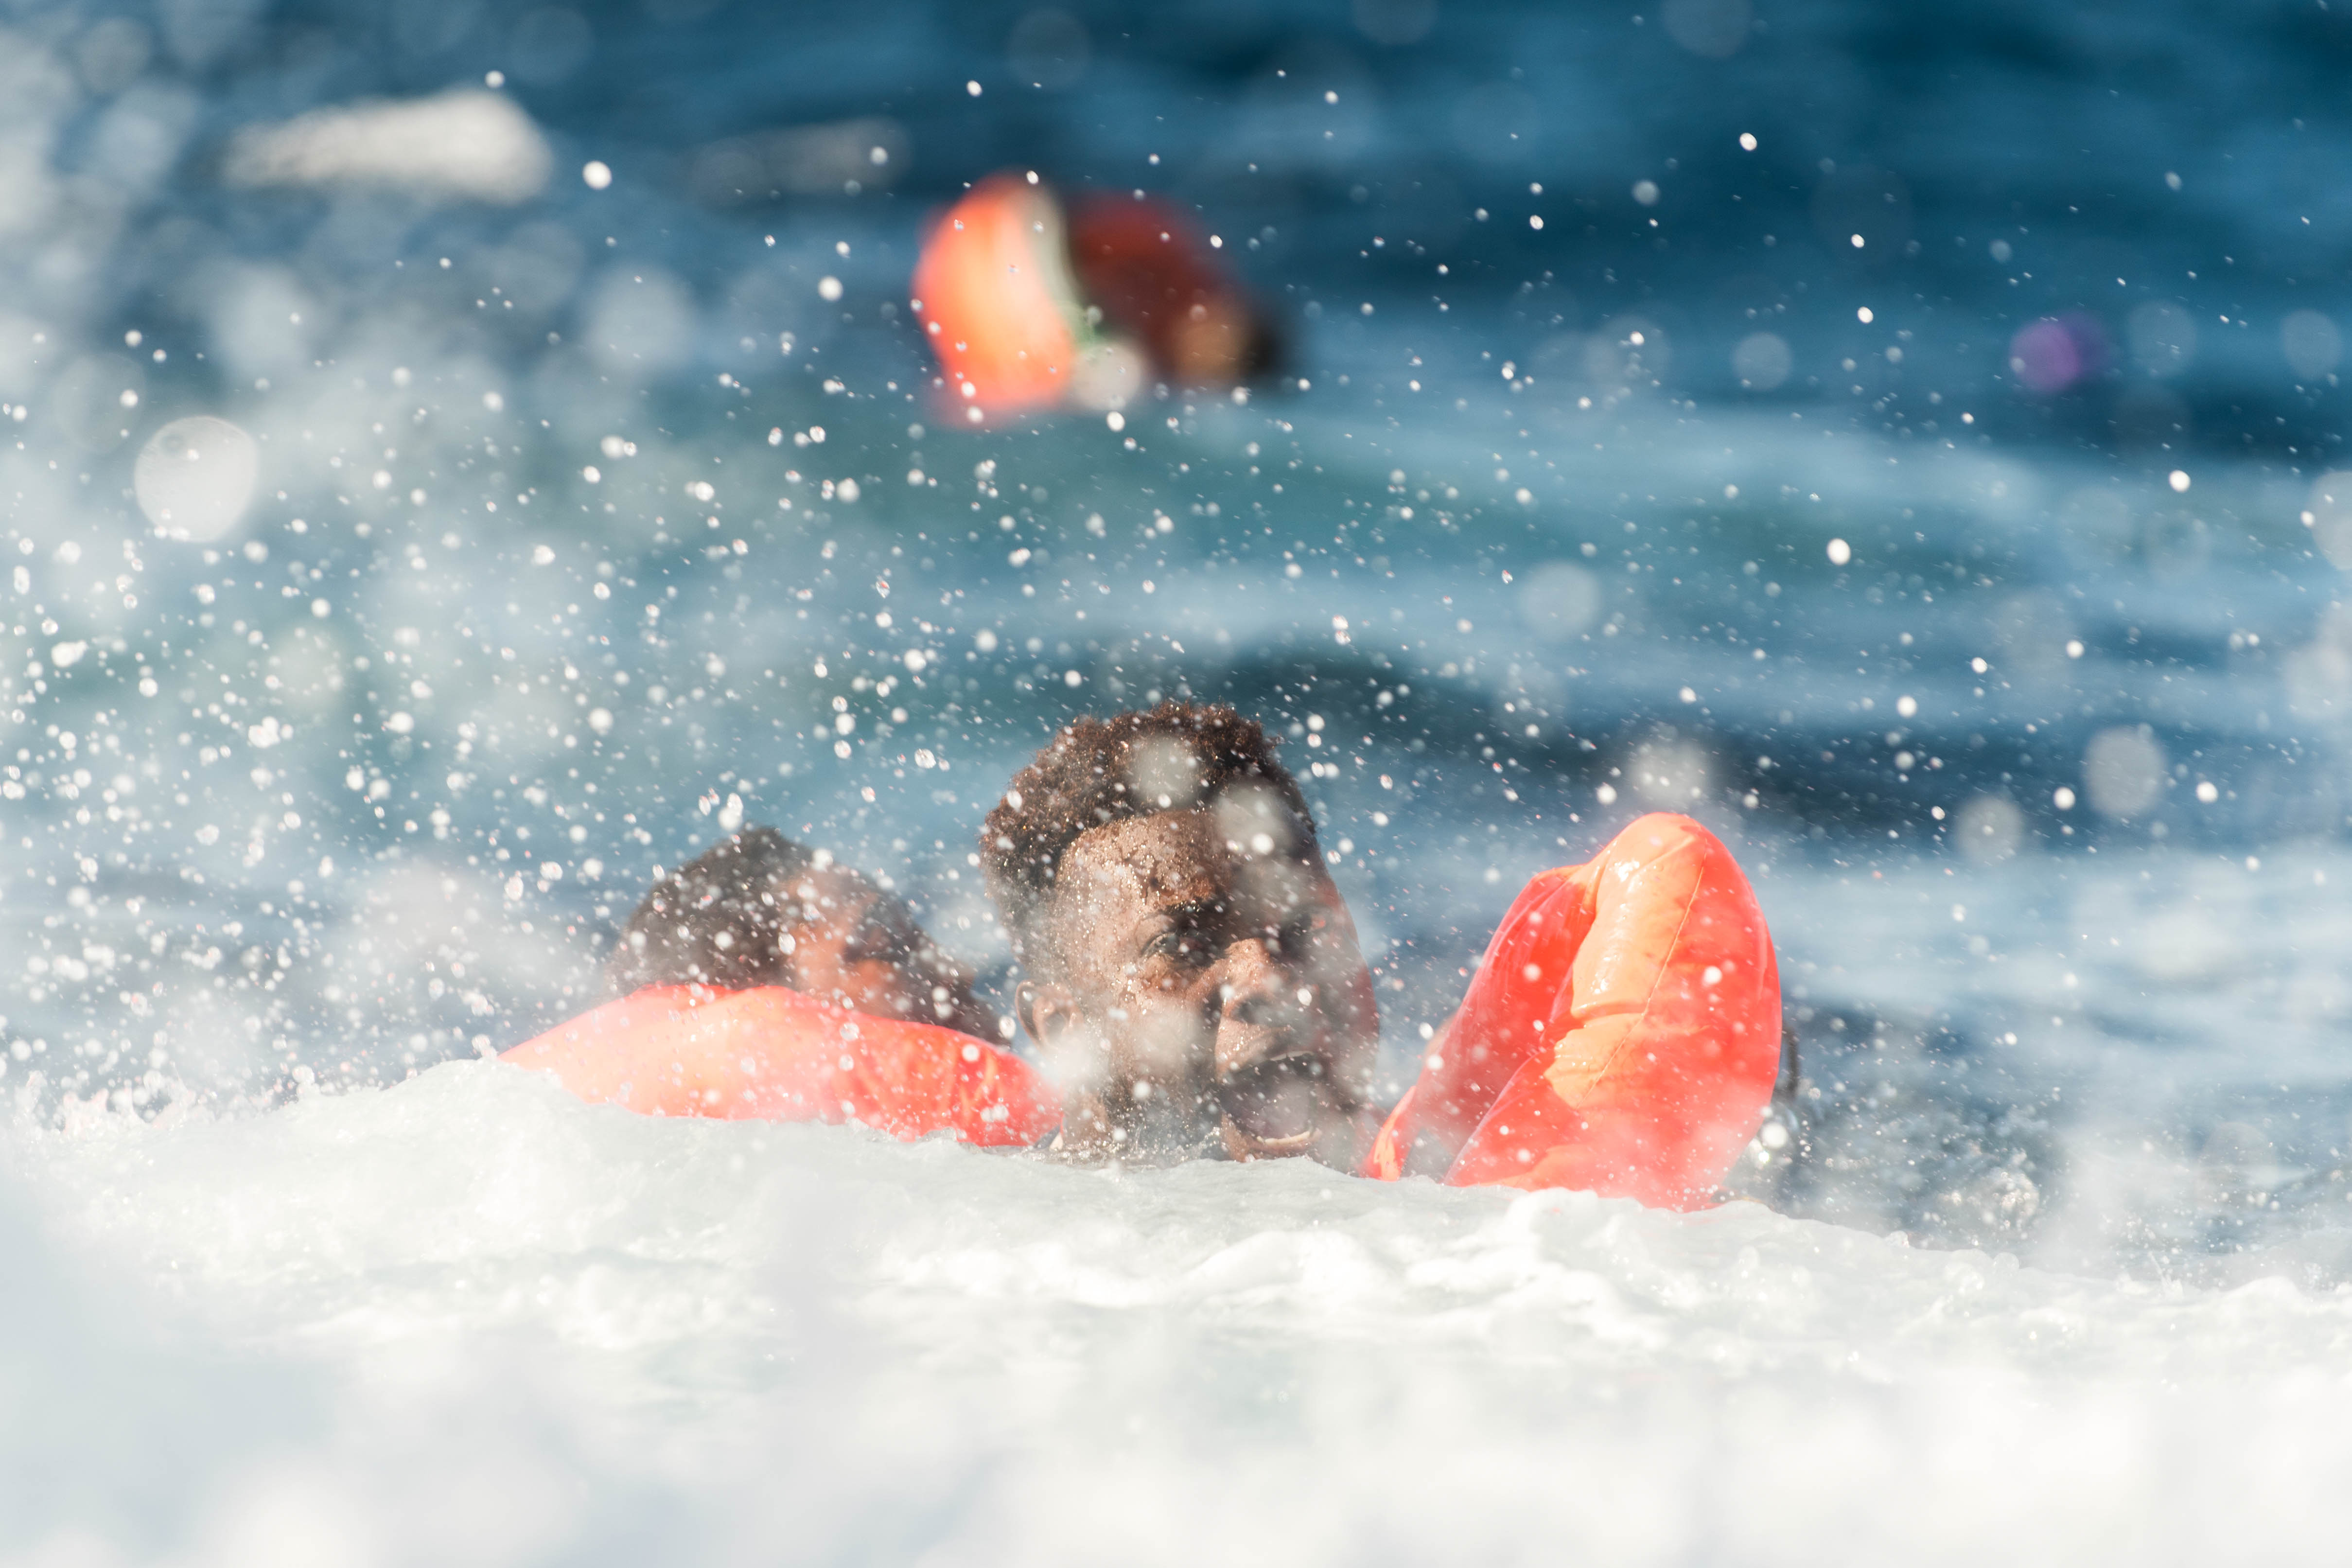 Le 27 janvier 2018, l’Aquarius a secouru 99 personnes en Méditerranée. Quand le bateau est arrivé sur le lieu du naufrage, des dizaines de personnes étaient déjà à l’eau. Un nombre indéterminé d'hommes, de femmes et d'enfants sont portés disparus, présumés noyés. © Laurin Schmid/SOS Méditerranée , janvier 2018 